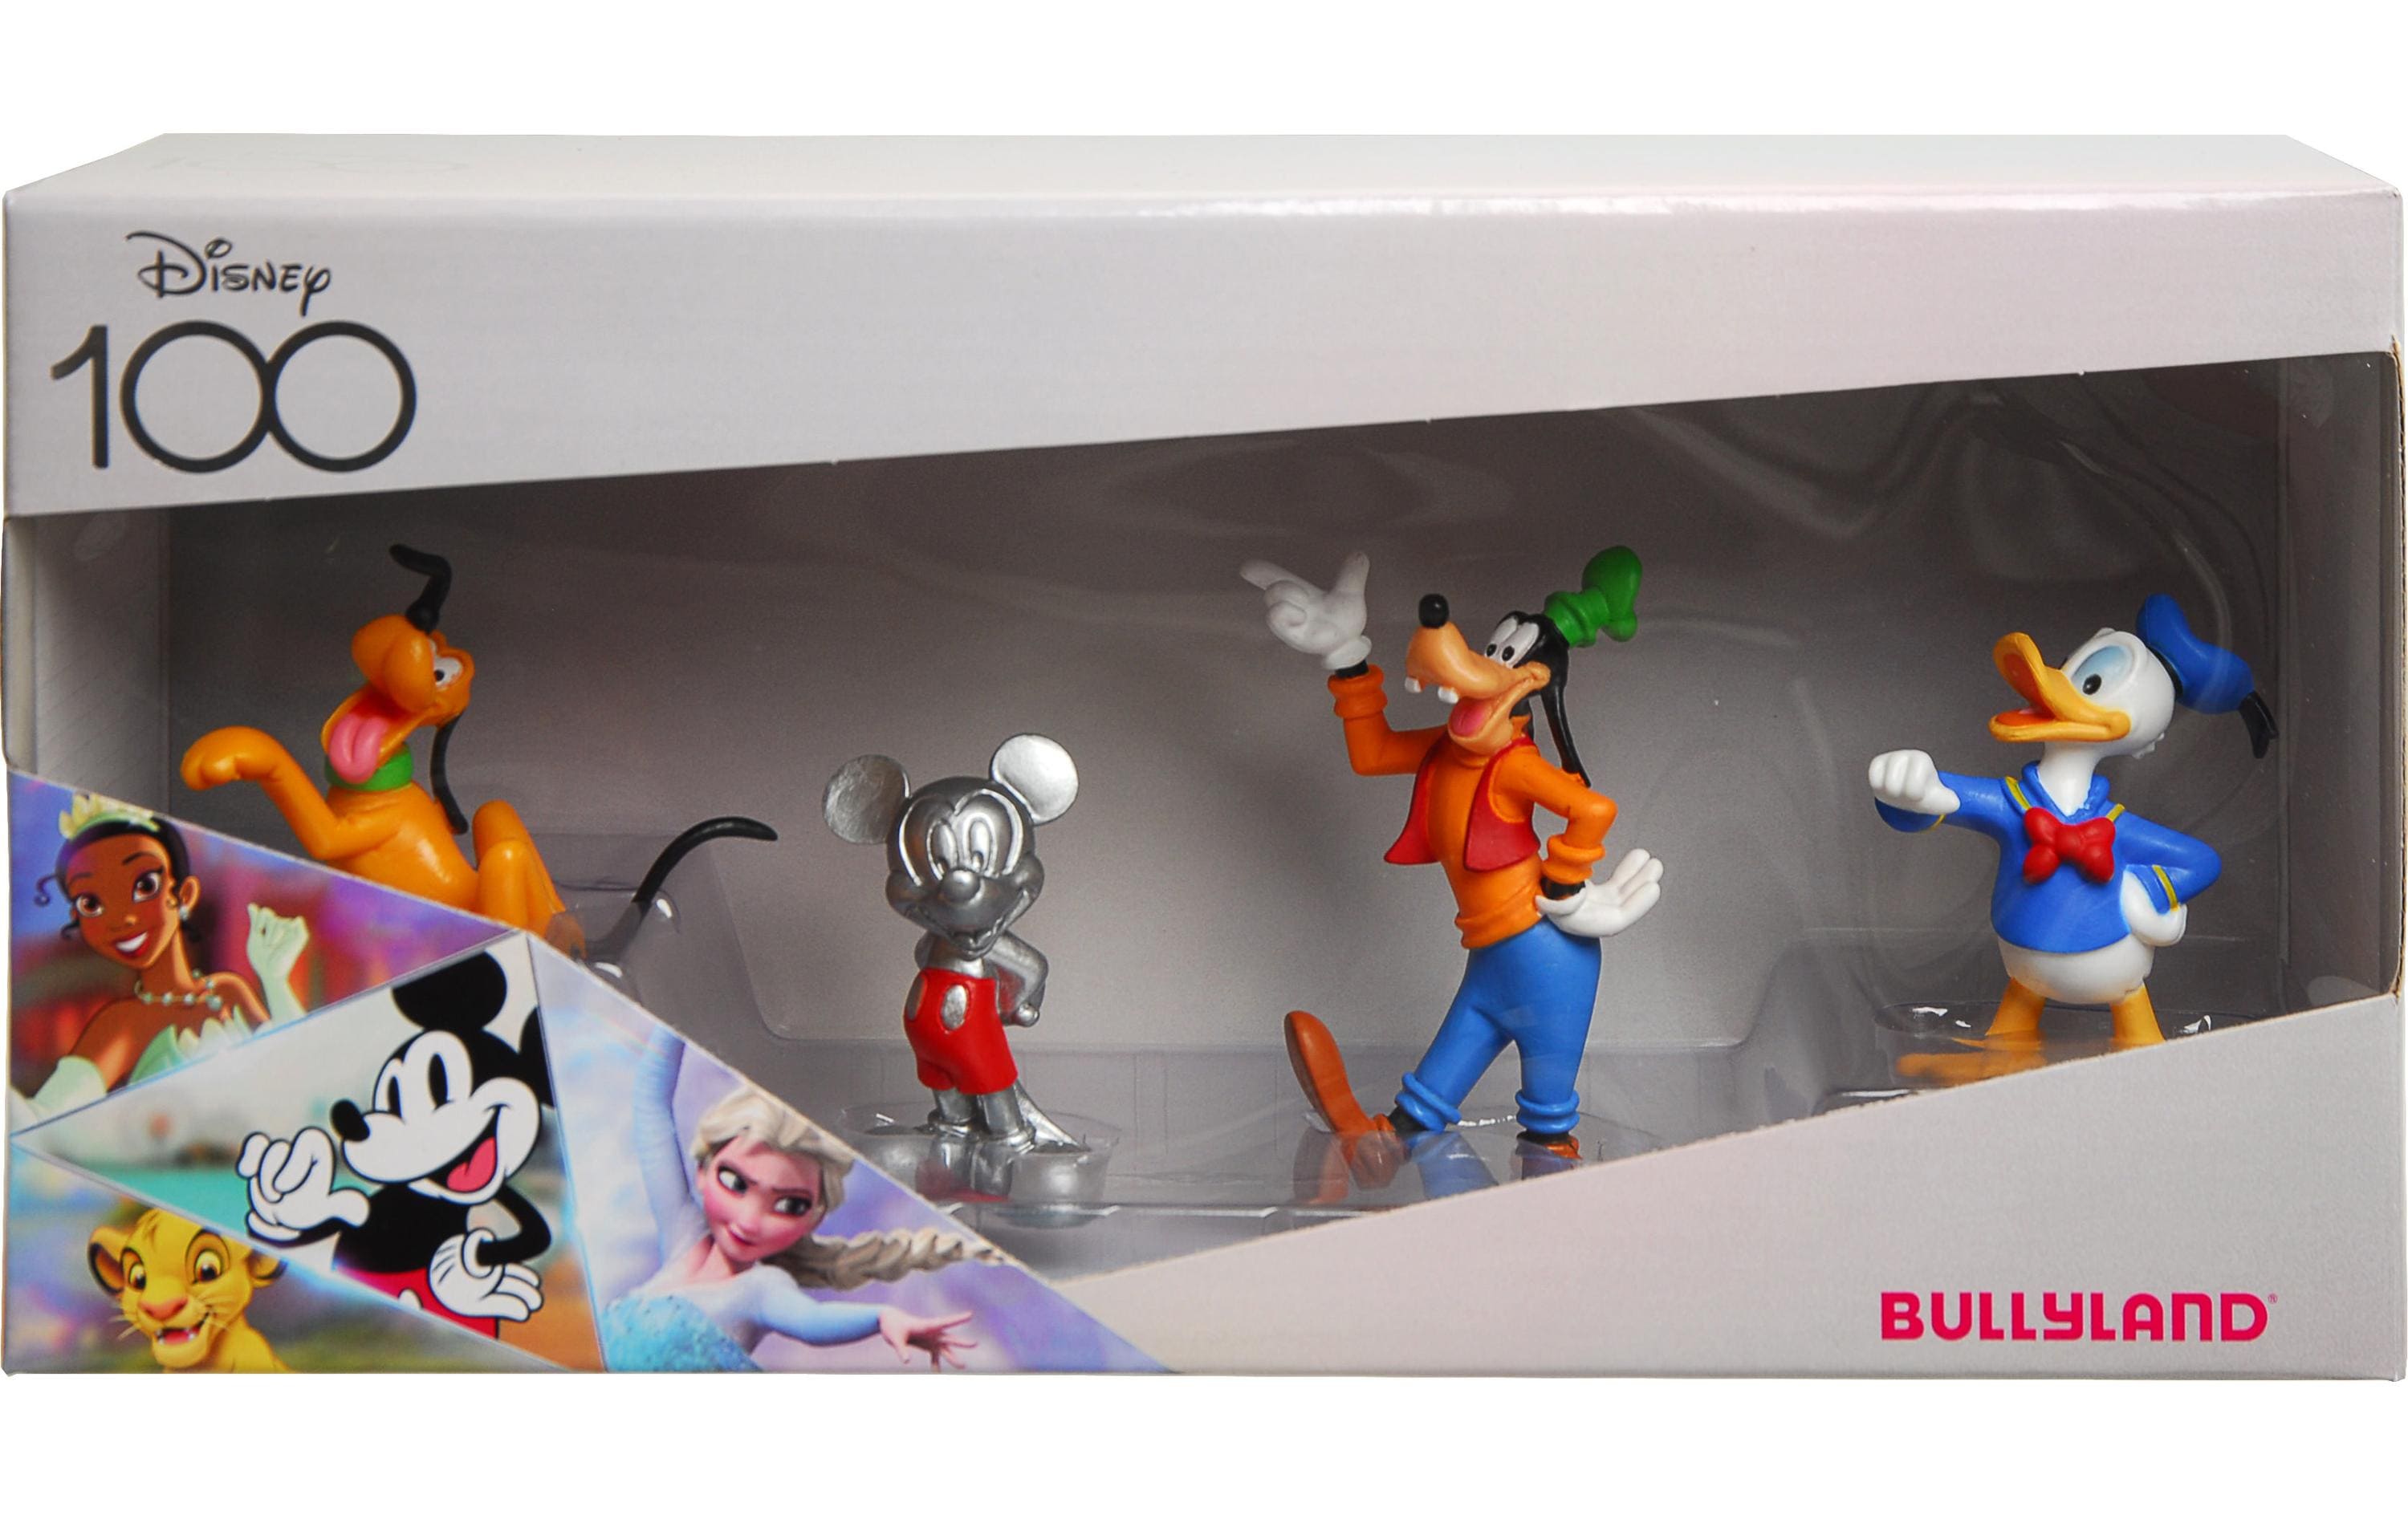 BULLYLAND Spielfigurenset Disney 100th Klassik Set 4 Figuren